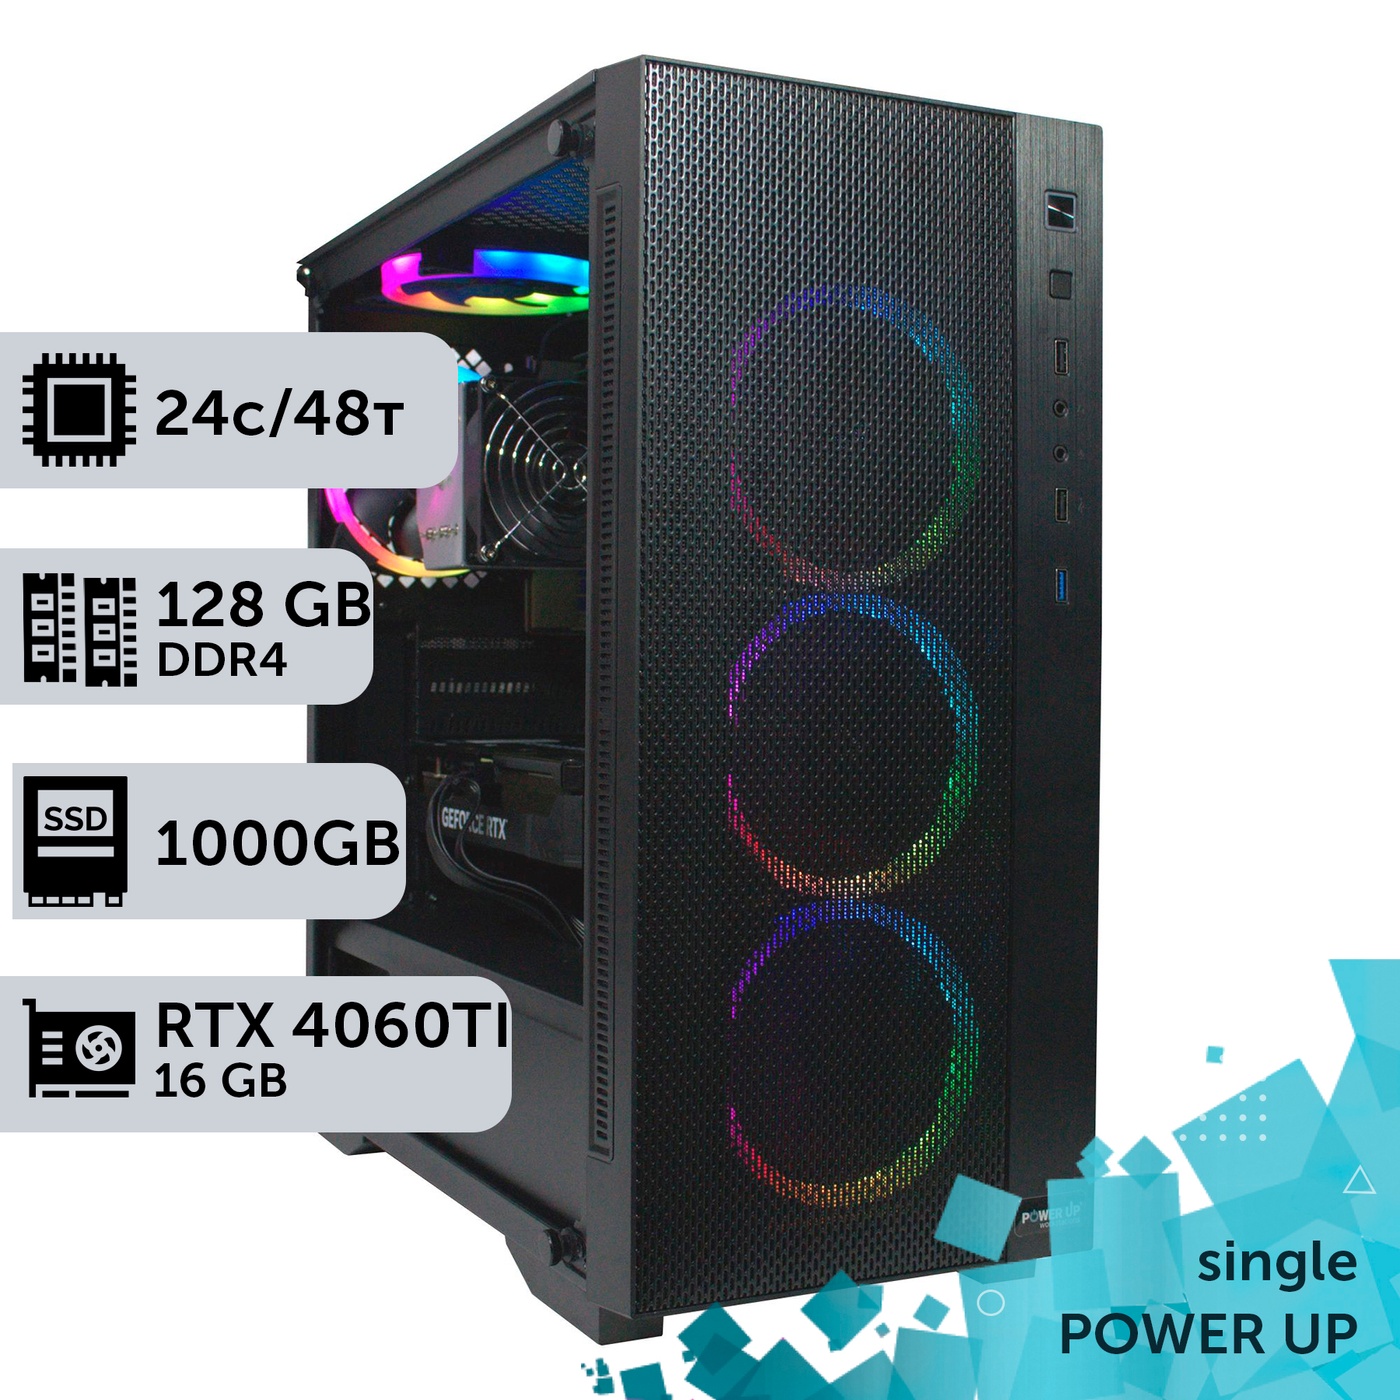 Робоча станція PowerUp #271 AMD EPYC 7413/128 GB/SSD 1TB/GeForce RTX 4060Ti 16GB